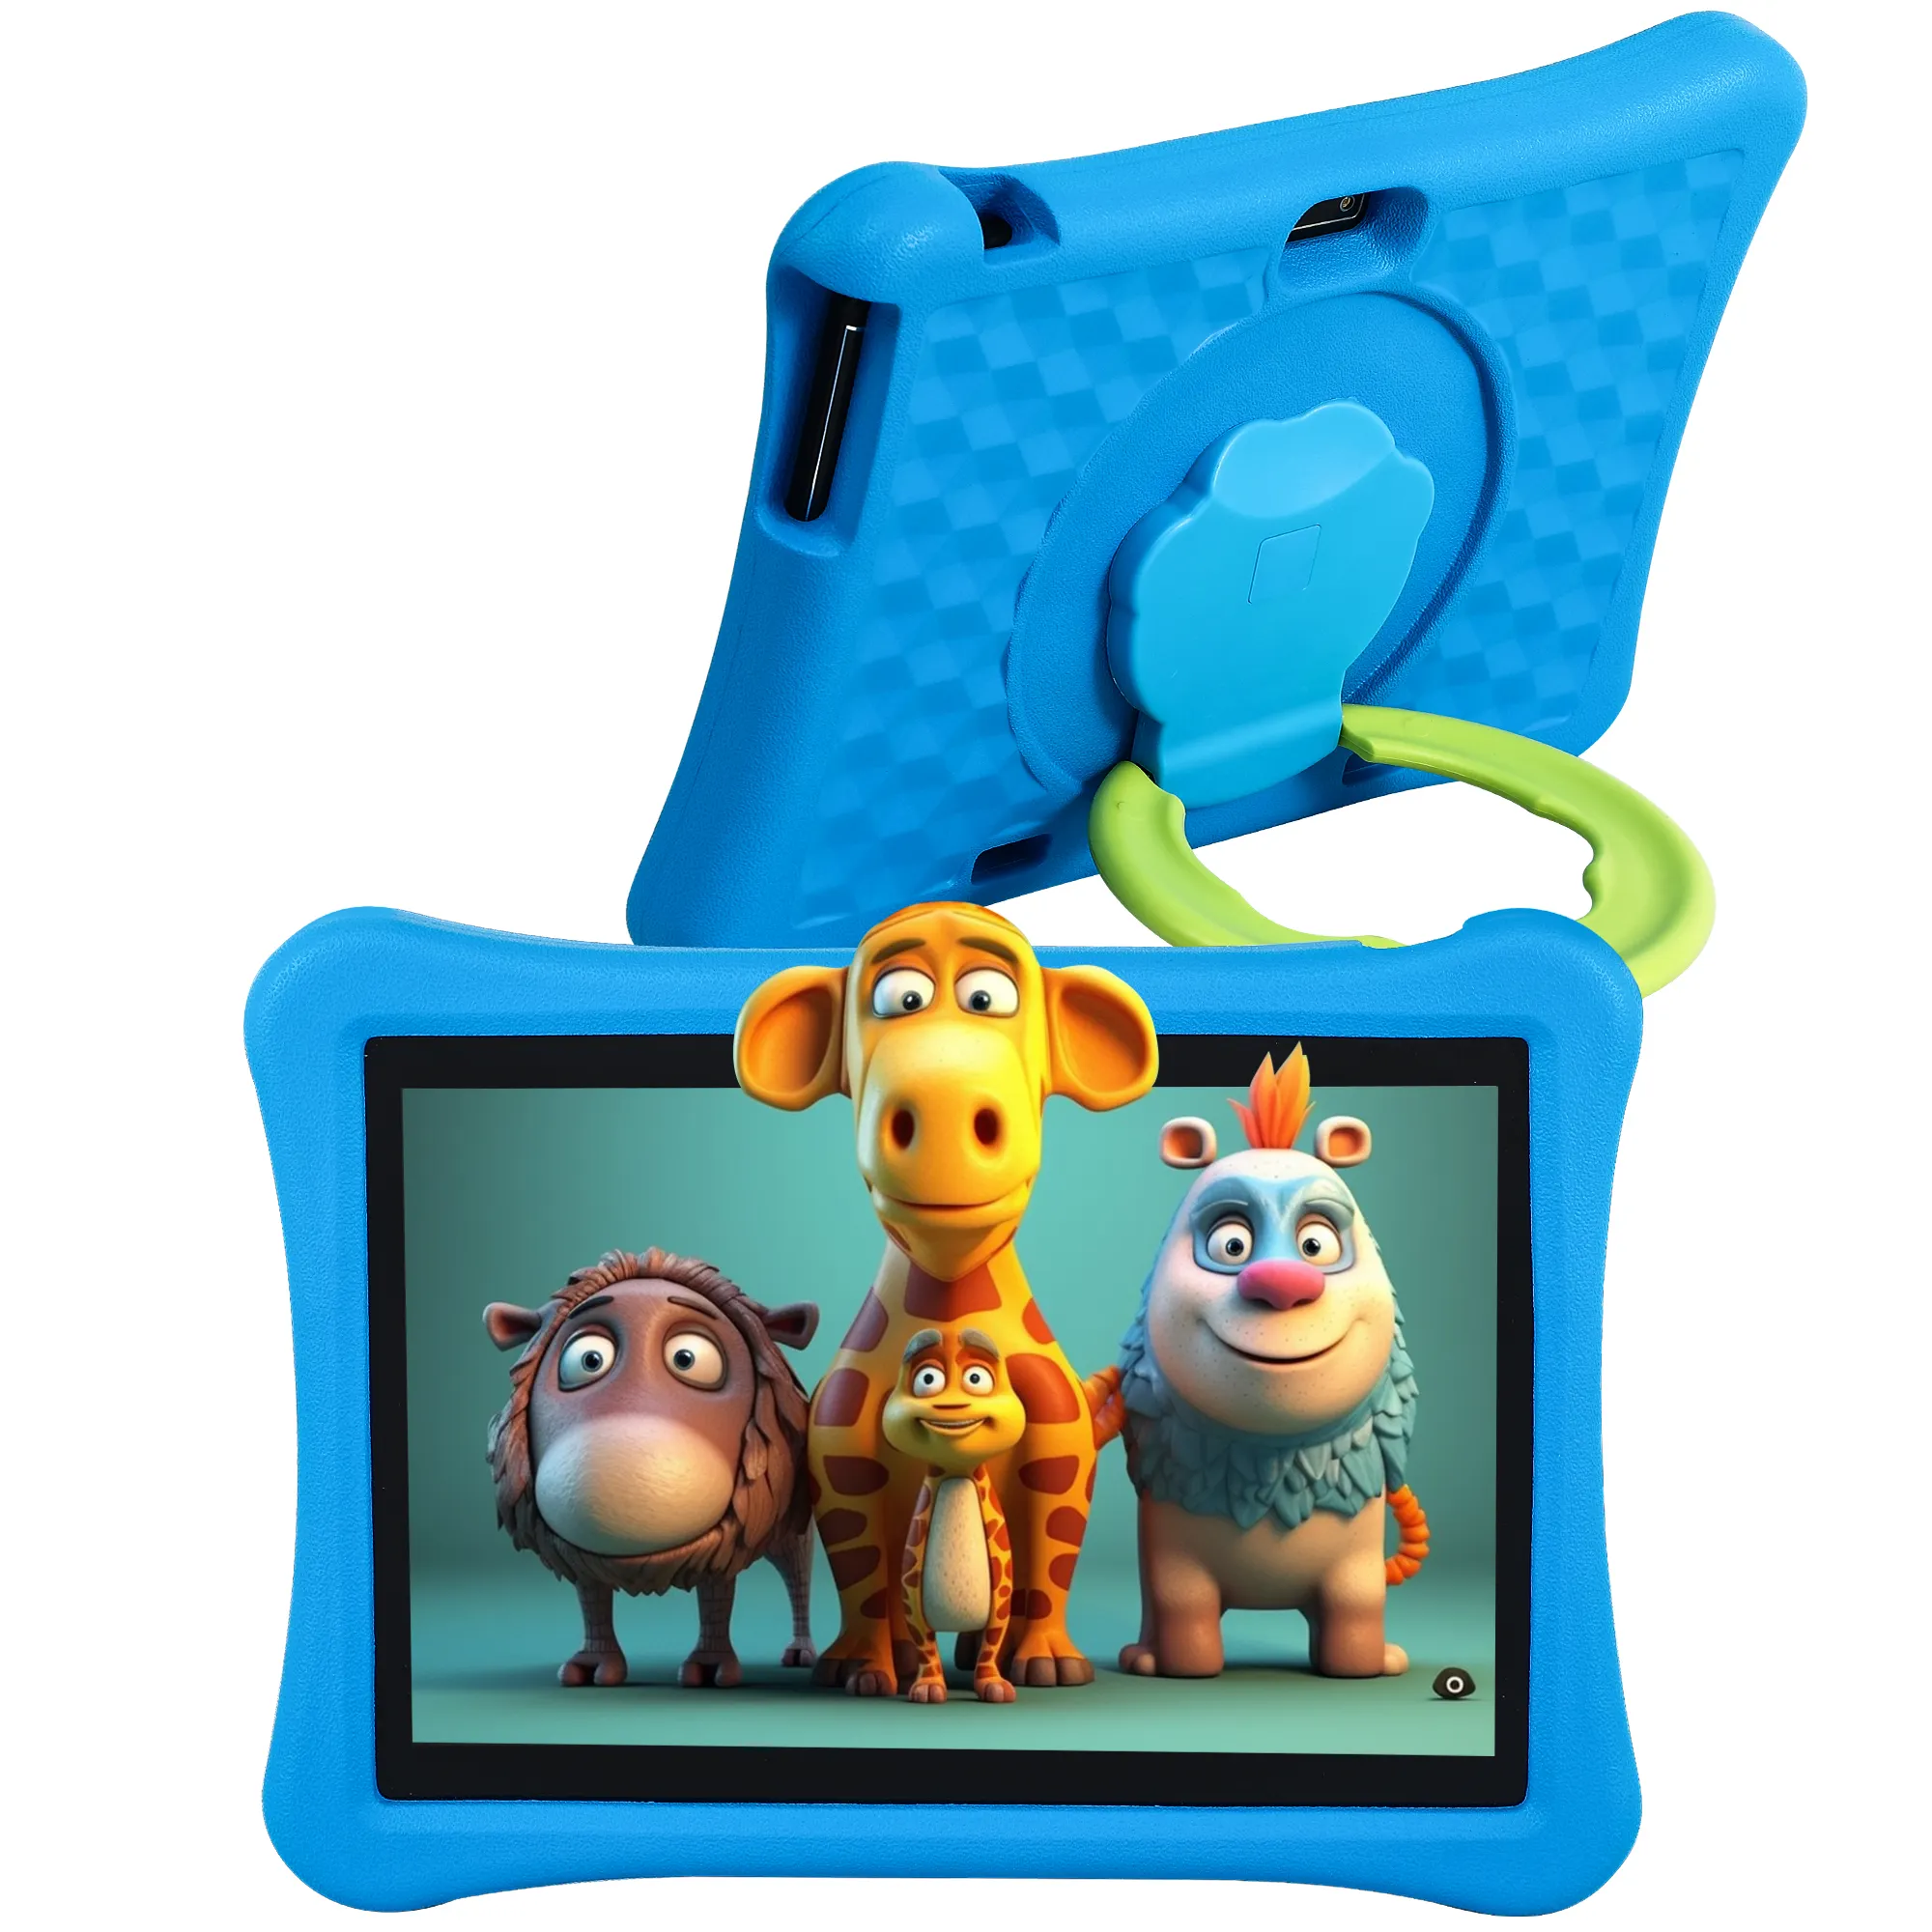 Veidoo 10 אינץ אנדרואיד Tablet עם מצלמה כפולה בקרת הורים חינוכיים 5000mAh Tablet Pc עם EVA ילד-הוכחת מקרה